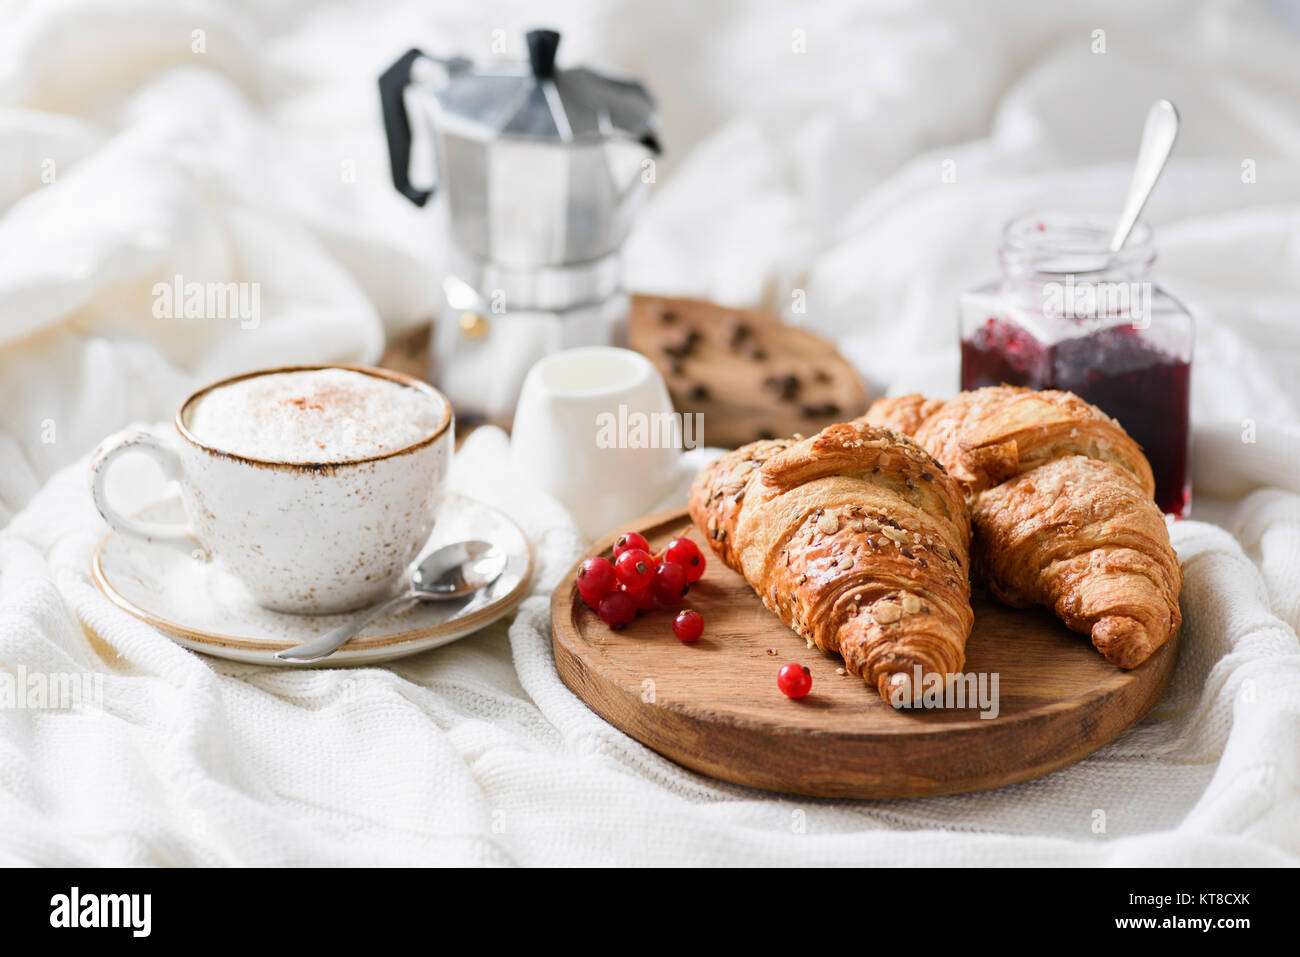 La prima colazione a letto con cornetti, marmellata, caffè cappuccino con panna e schiuma di latte. Visualizzazione orizzontale Foto Stock